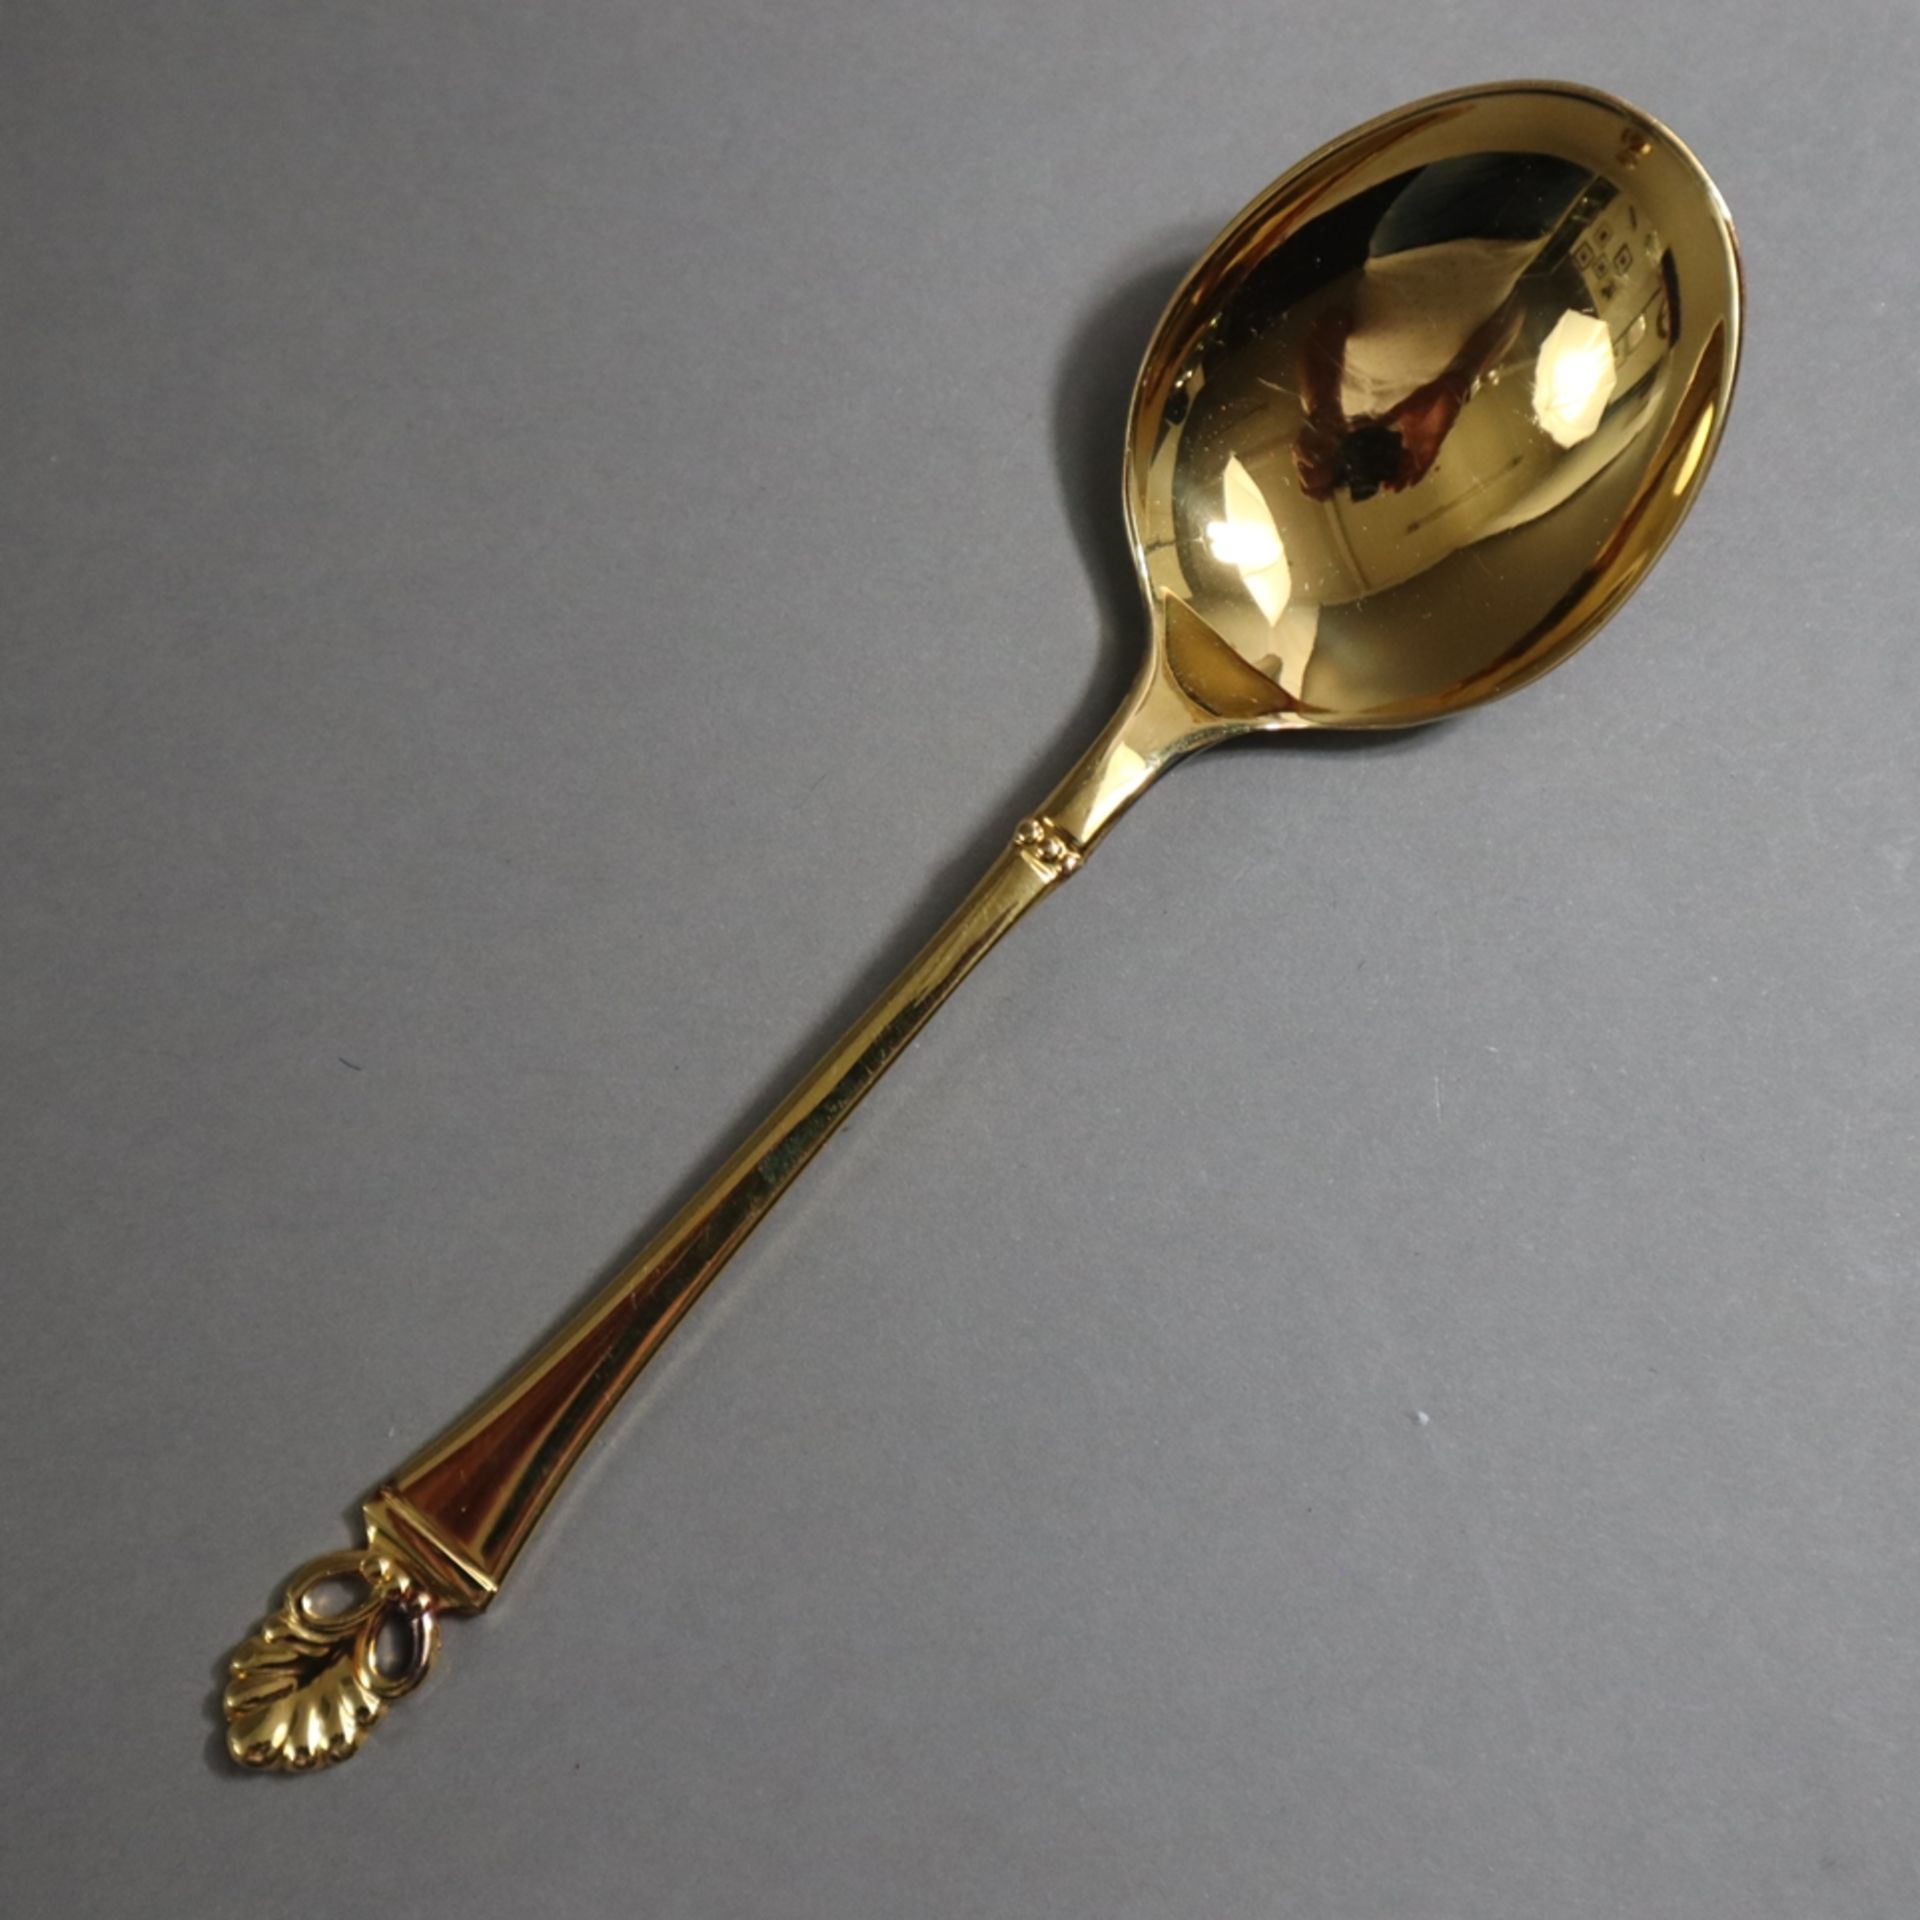 Konvolut Besteckteile - Form "Florentiner", "Wilkens", 800 Silber, vergoldet, punziert: MZ /WILKENS - Bild 3 aus 6